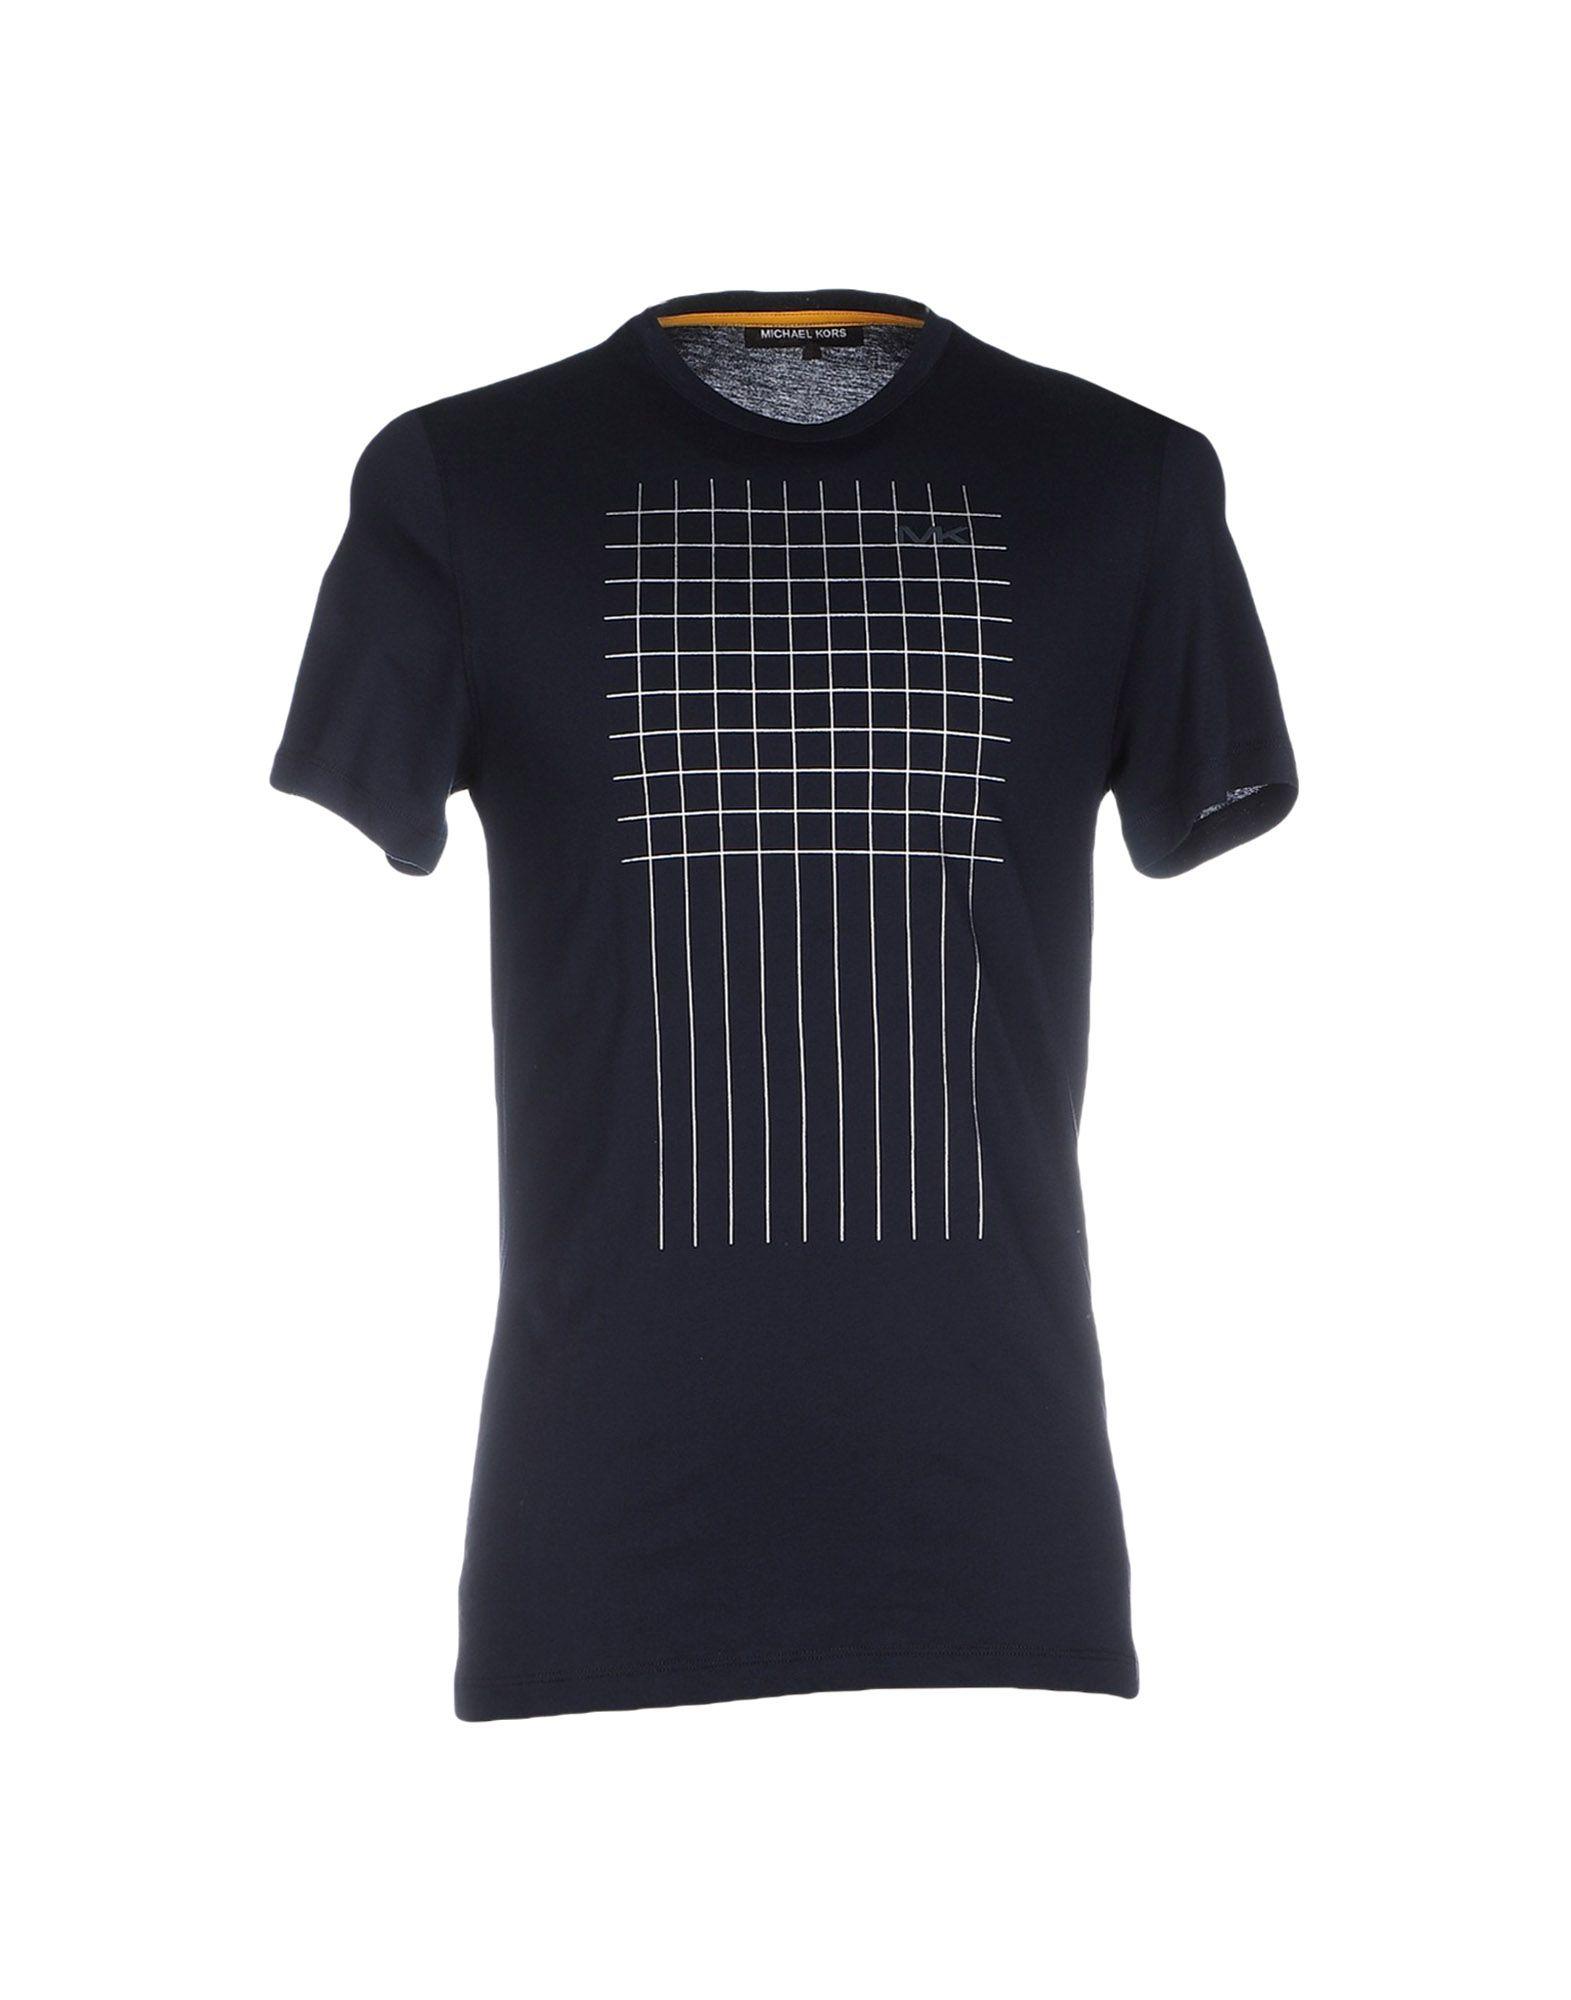 Lyst - Michael Kors T-shirt in Blue for Men